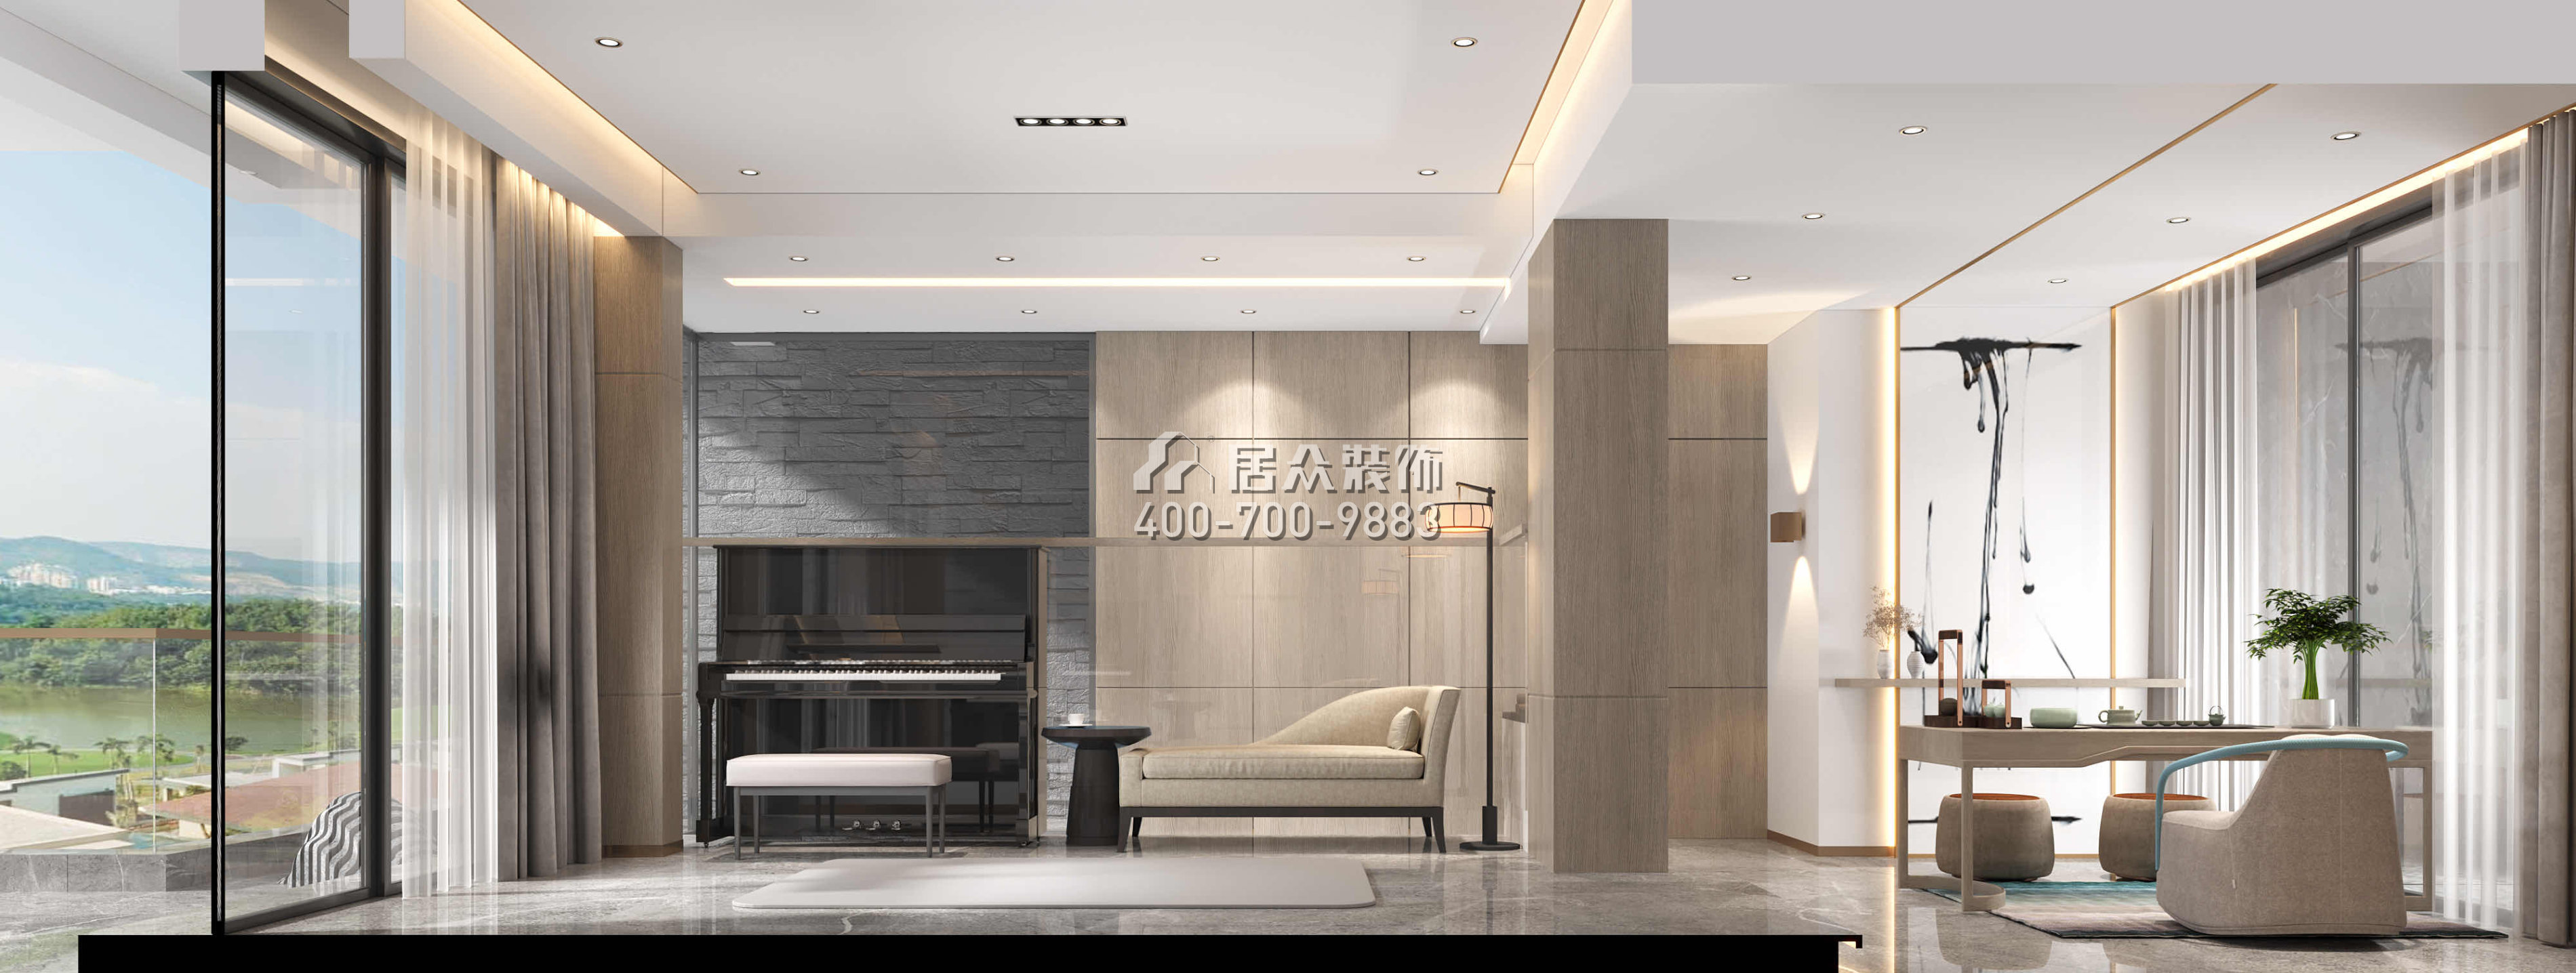 翠湖香山别苑200平方米中式风格复式户型娱乐室装修效果图